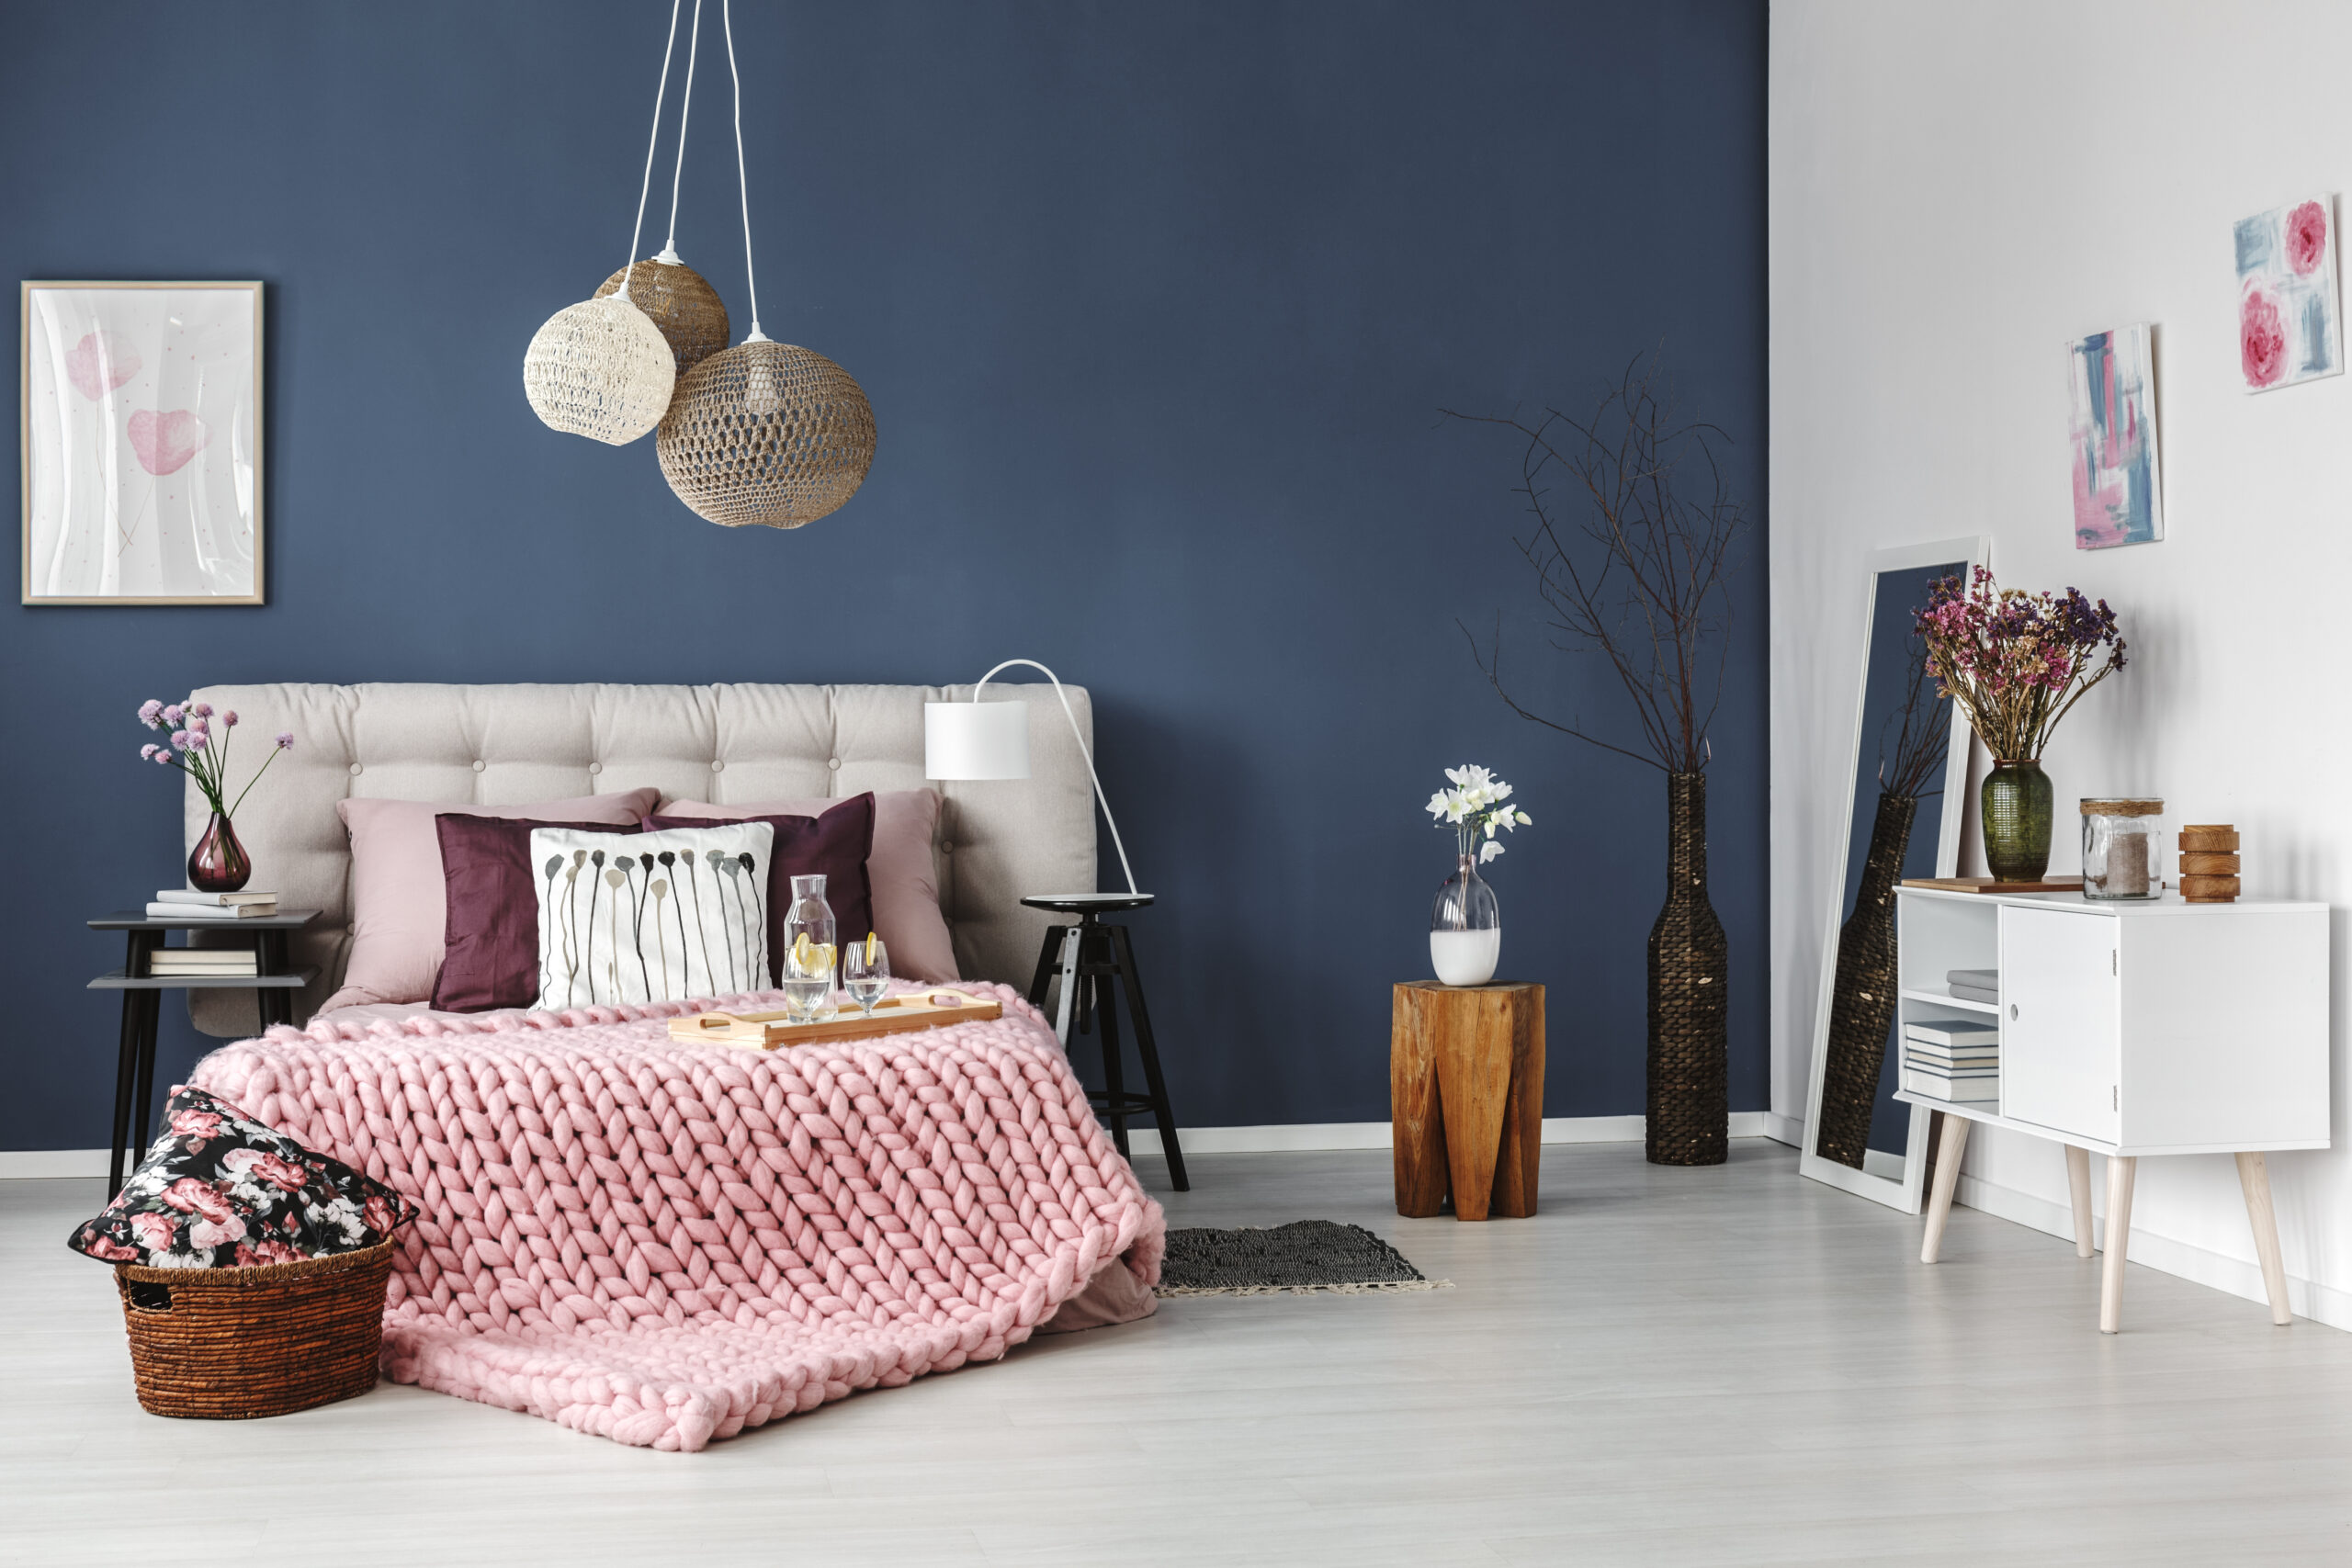 Eine dunkelblau gestrichene Wand im Schlafzimmer wirkt beruhigend  und zeitgleich erfrischend.